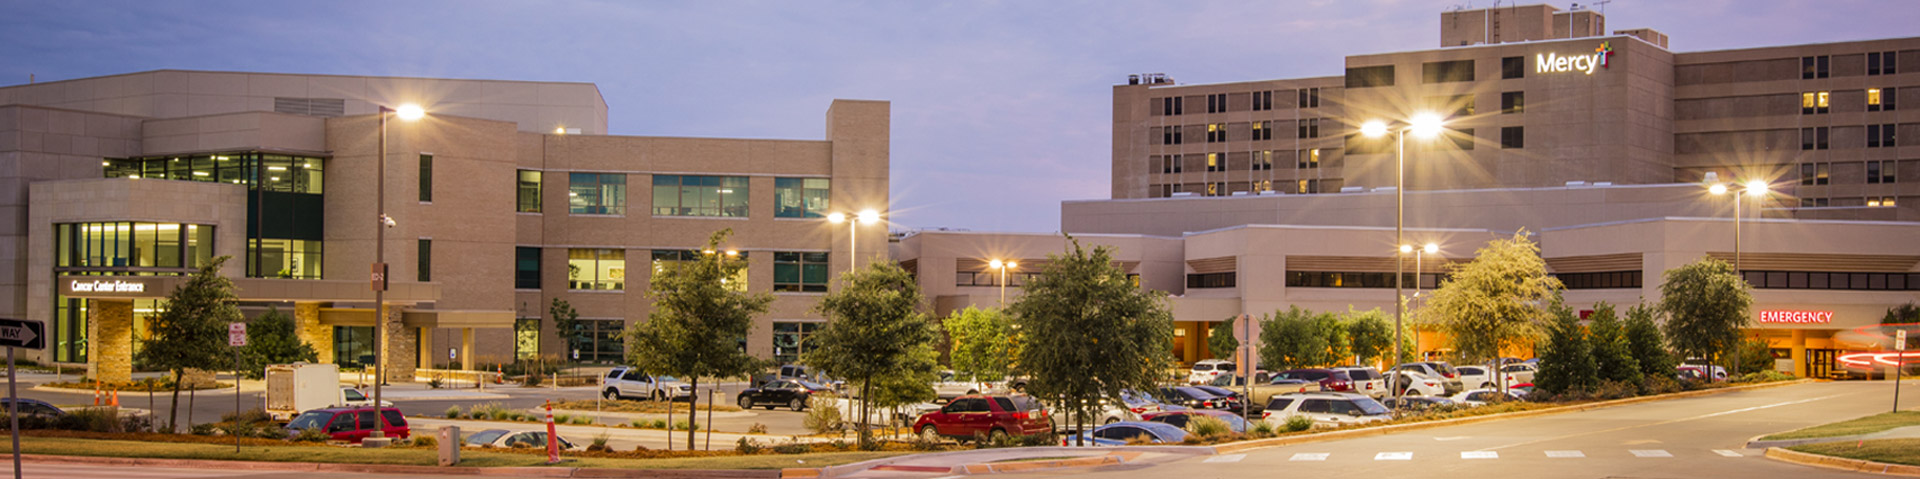 WEB_Hero_Location_Mercy-Hospital-Oklahoma-City